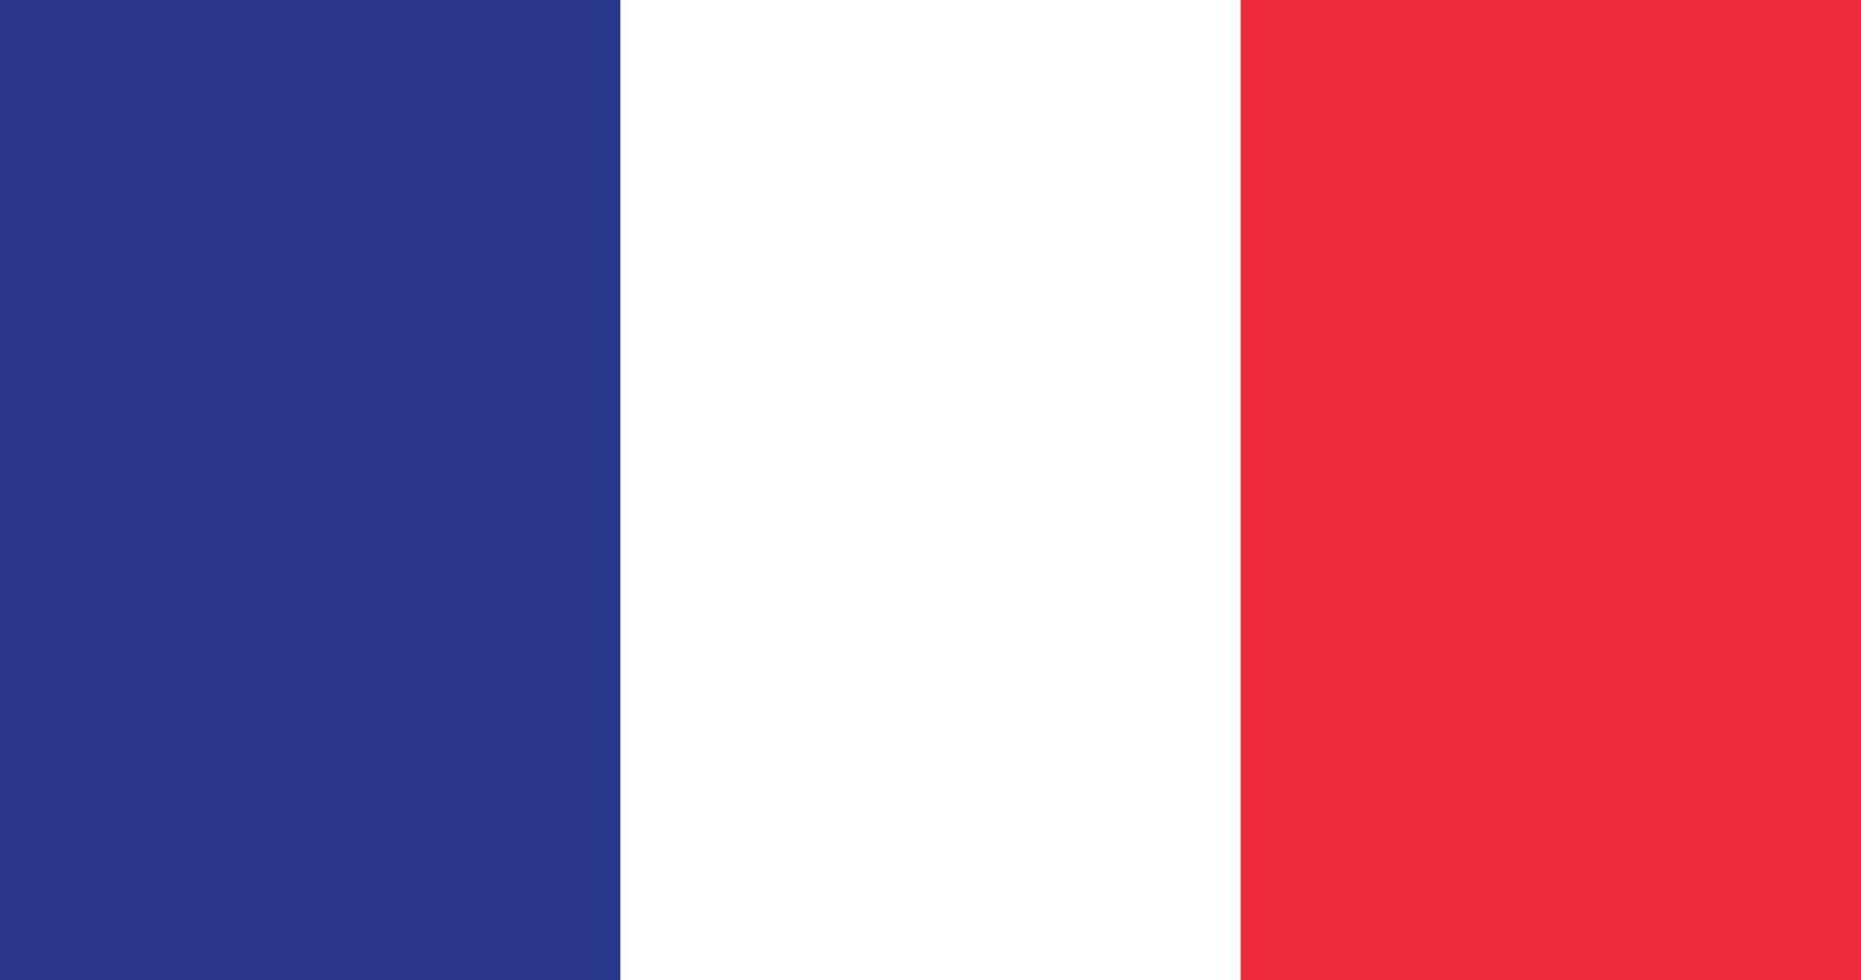 France flag with original RGB color vector illustration design